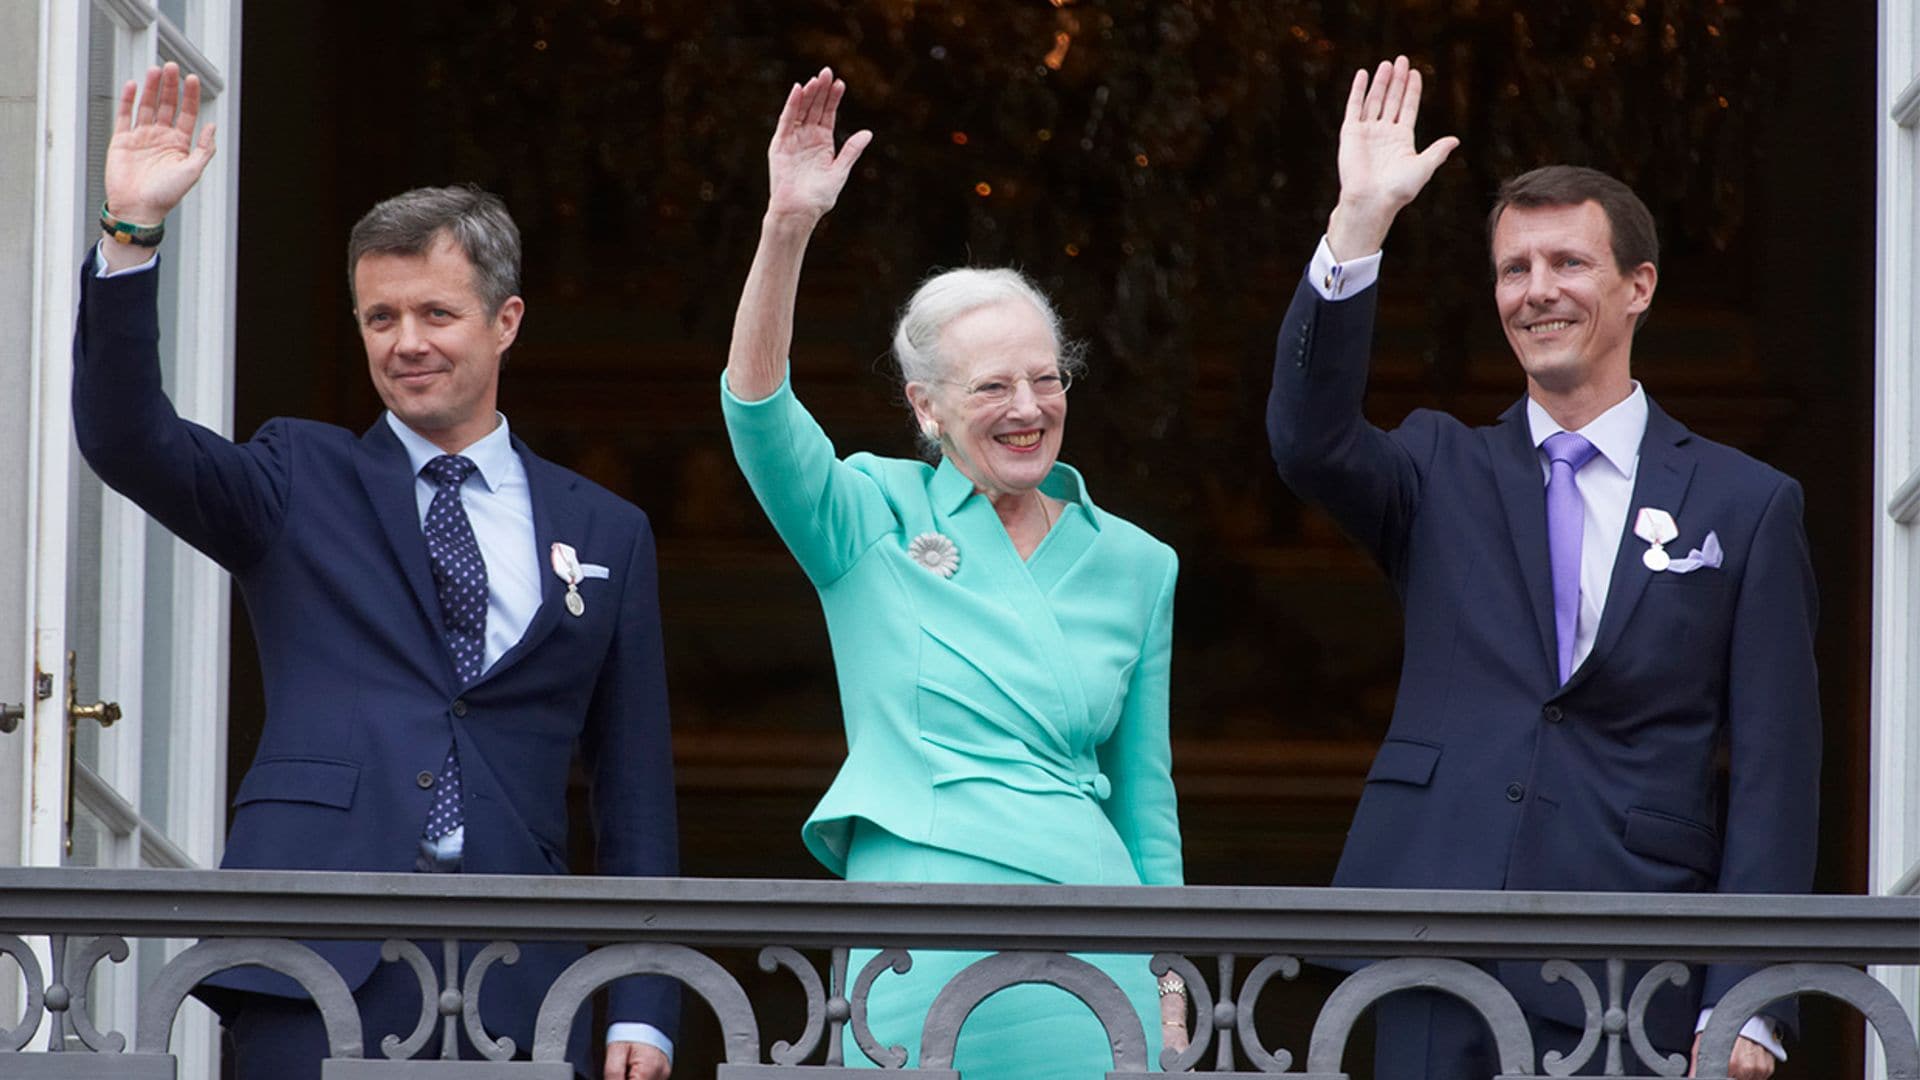 La retirada de títulos en Dinamarca saca a relucir viejas rencillas en la Corte de la reina Margarita